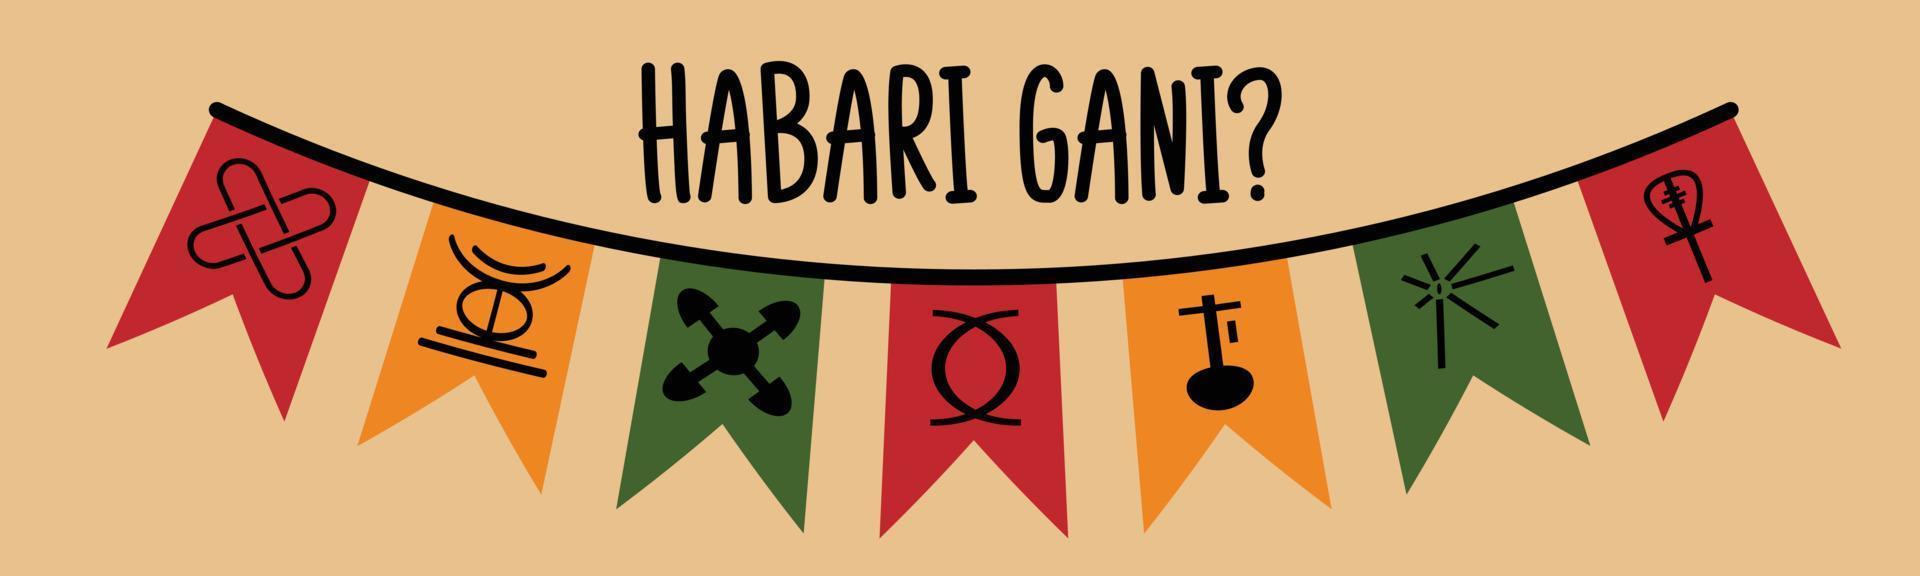 habari gani - traduzione swahili - quali sono le novità. frase di saluto tradizionale per la celebrazione del festival kwanzaa. bandiere festose con sette principi dei simboli kwanzaa. vettore